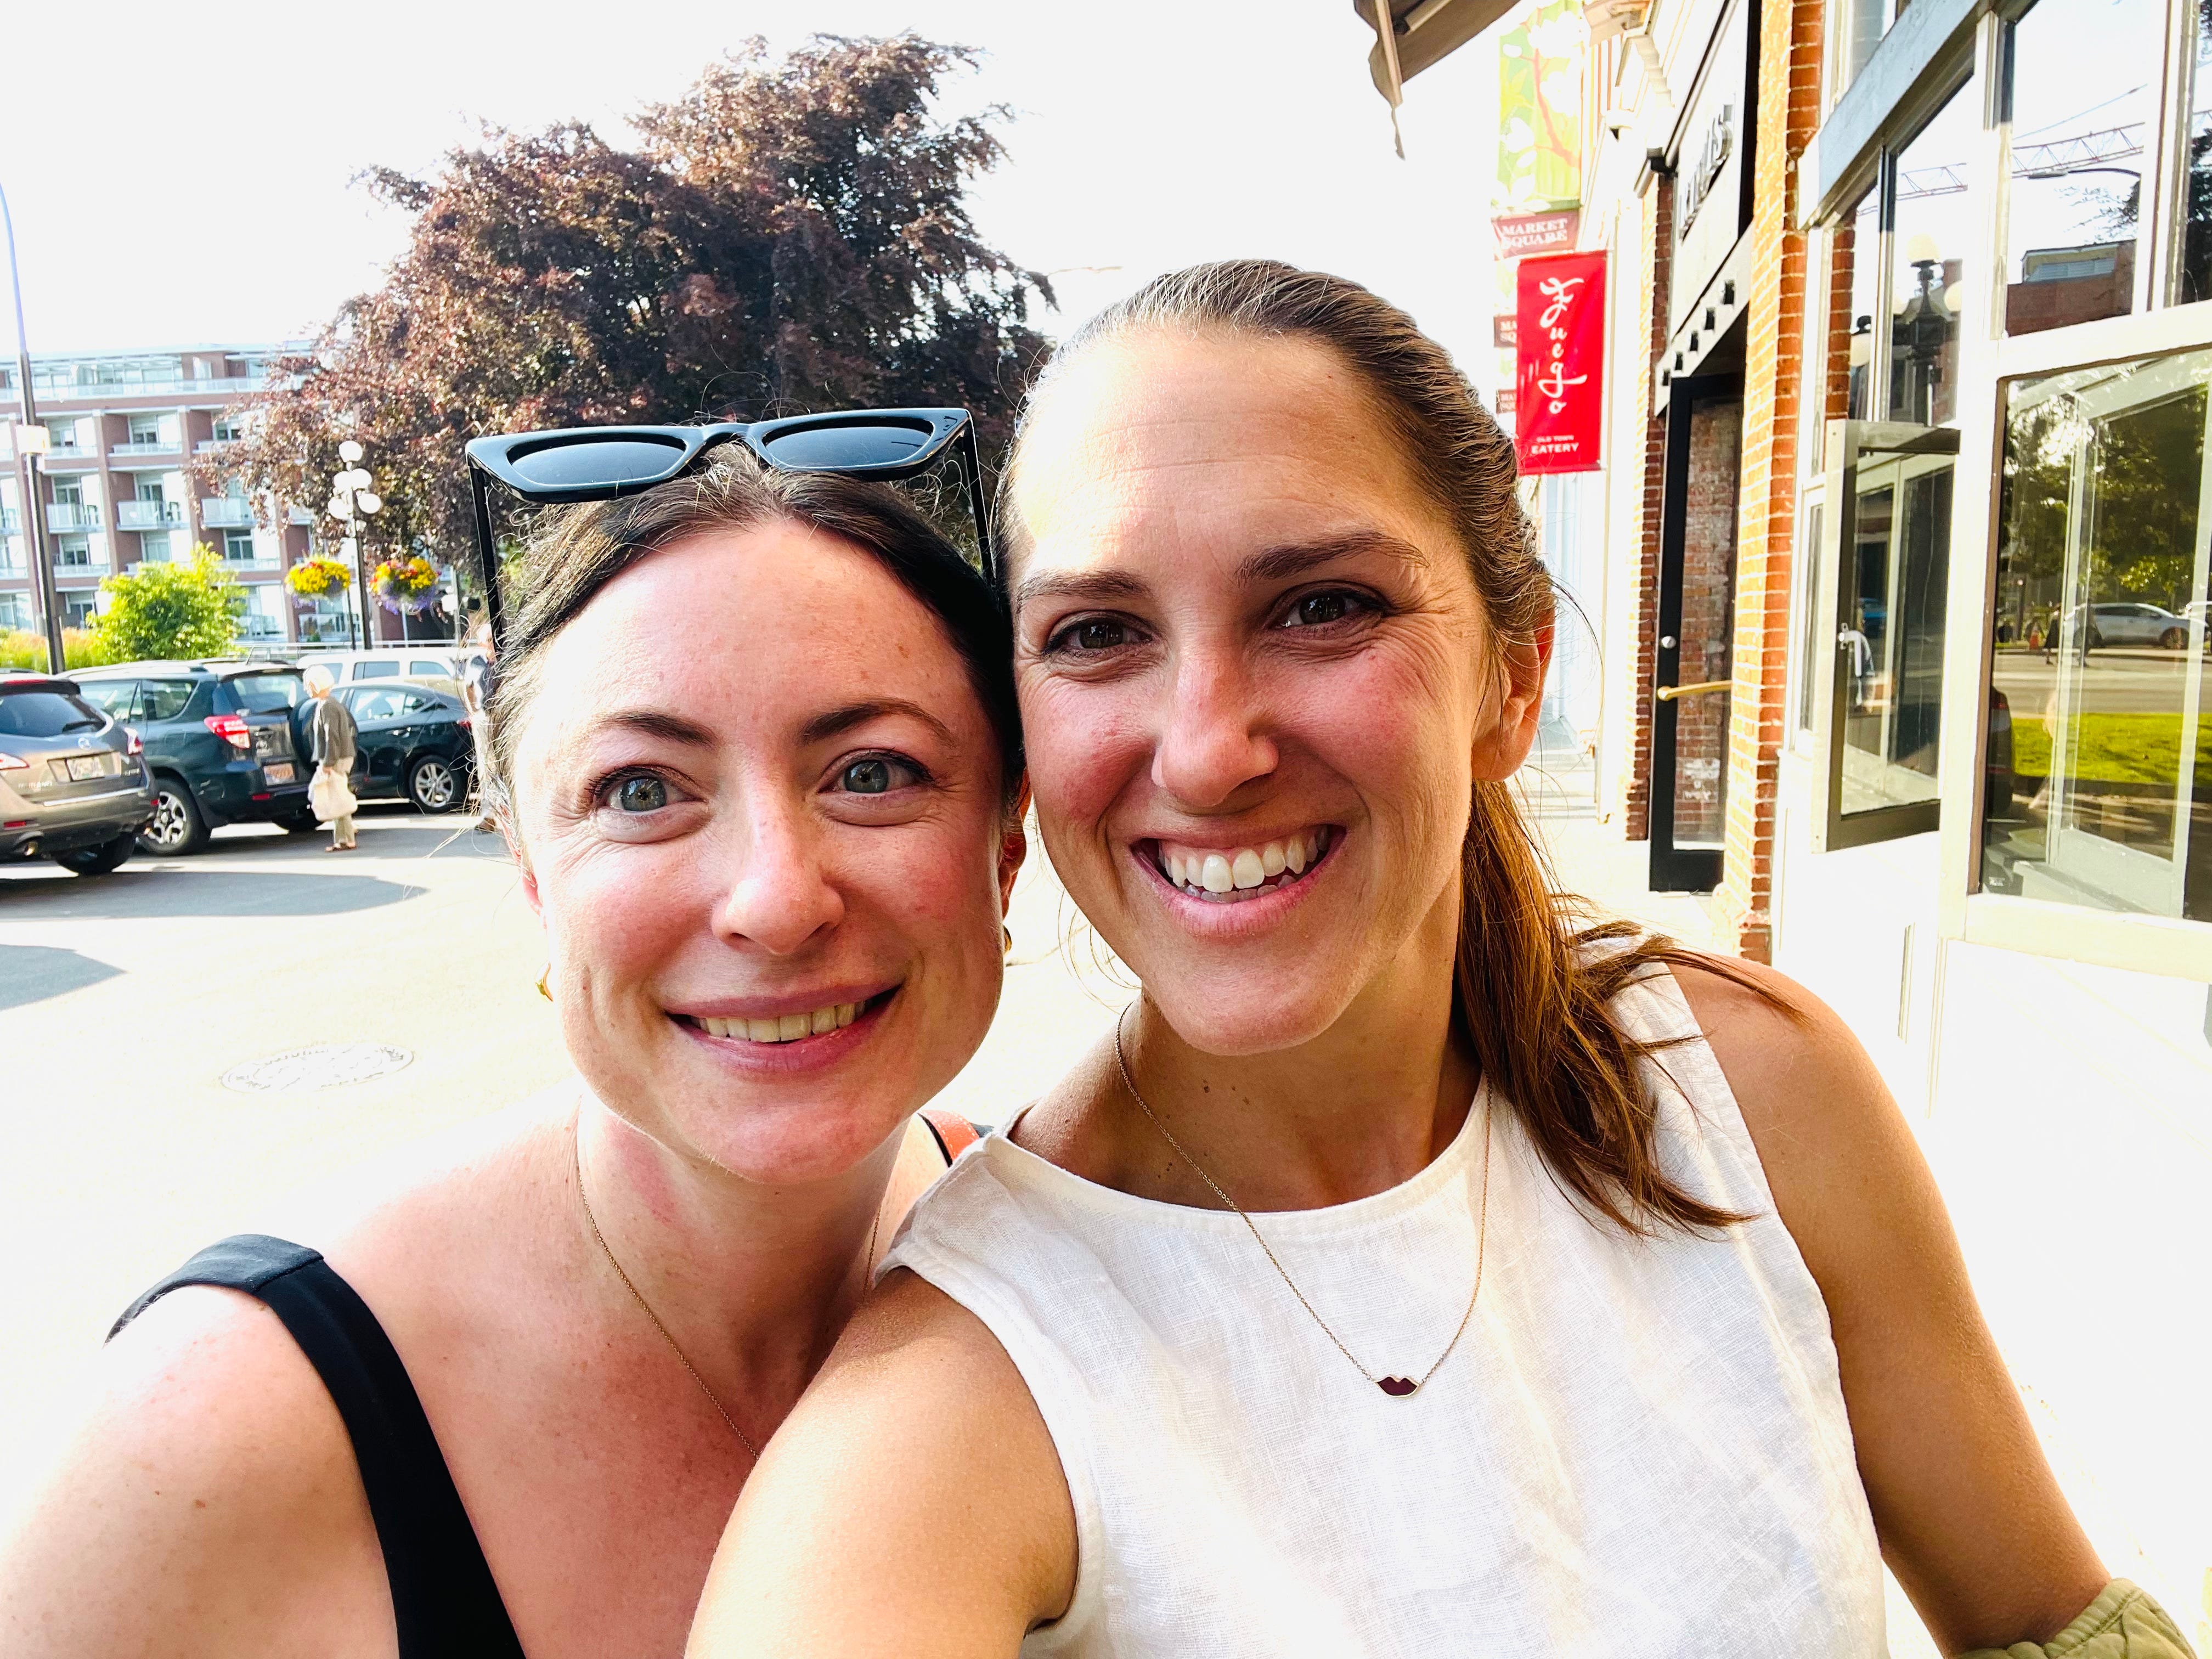 Simone und ihre Cousine posieren für ein Selfie auf den Straßen von Victoria, Kanada